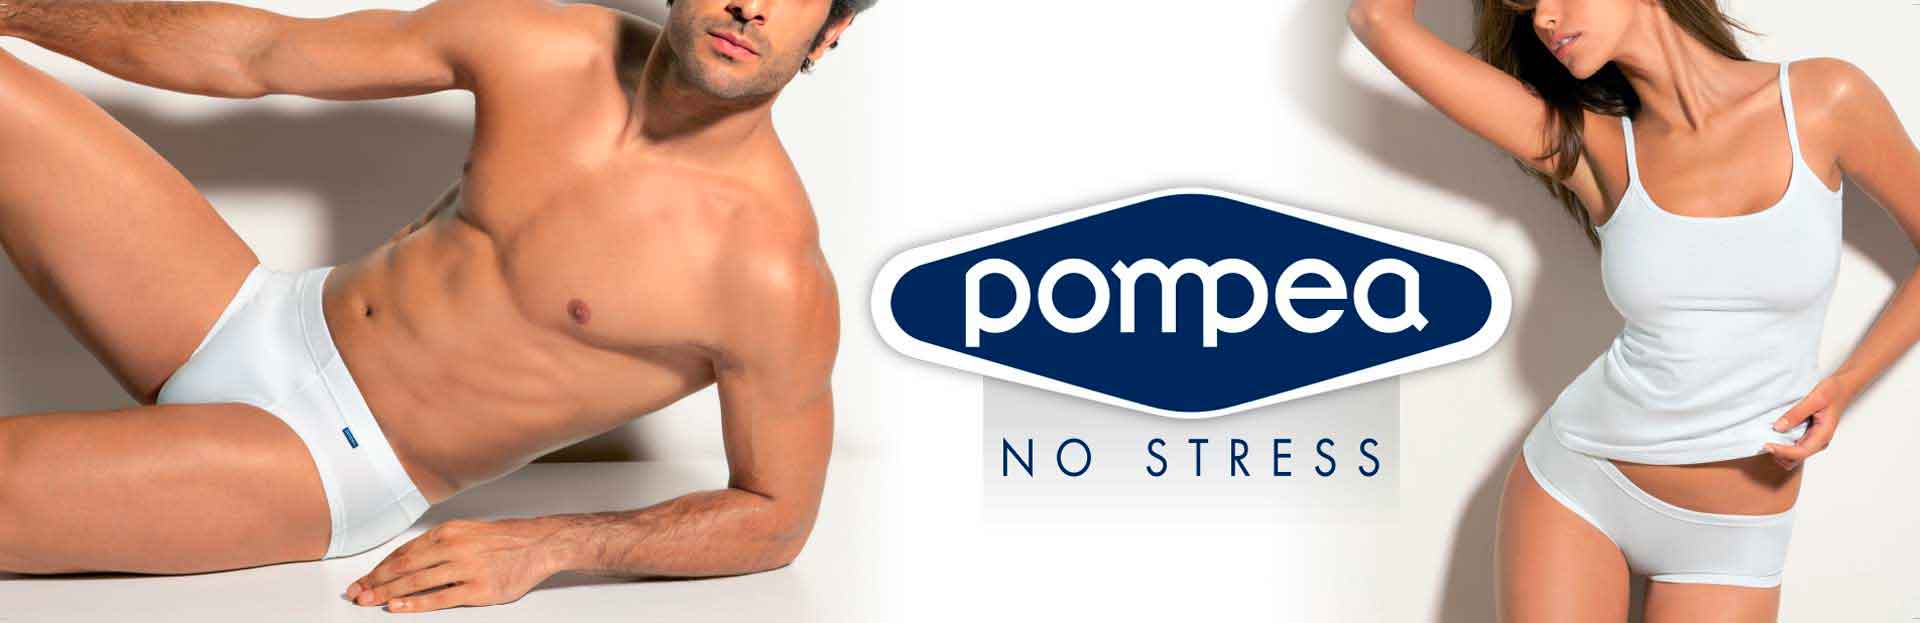 pompea underwear